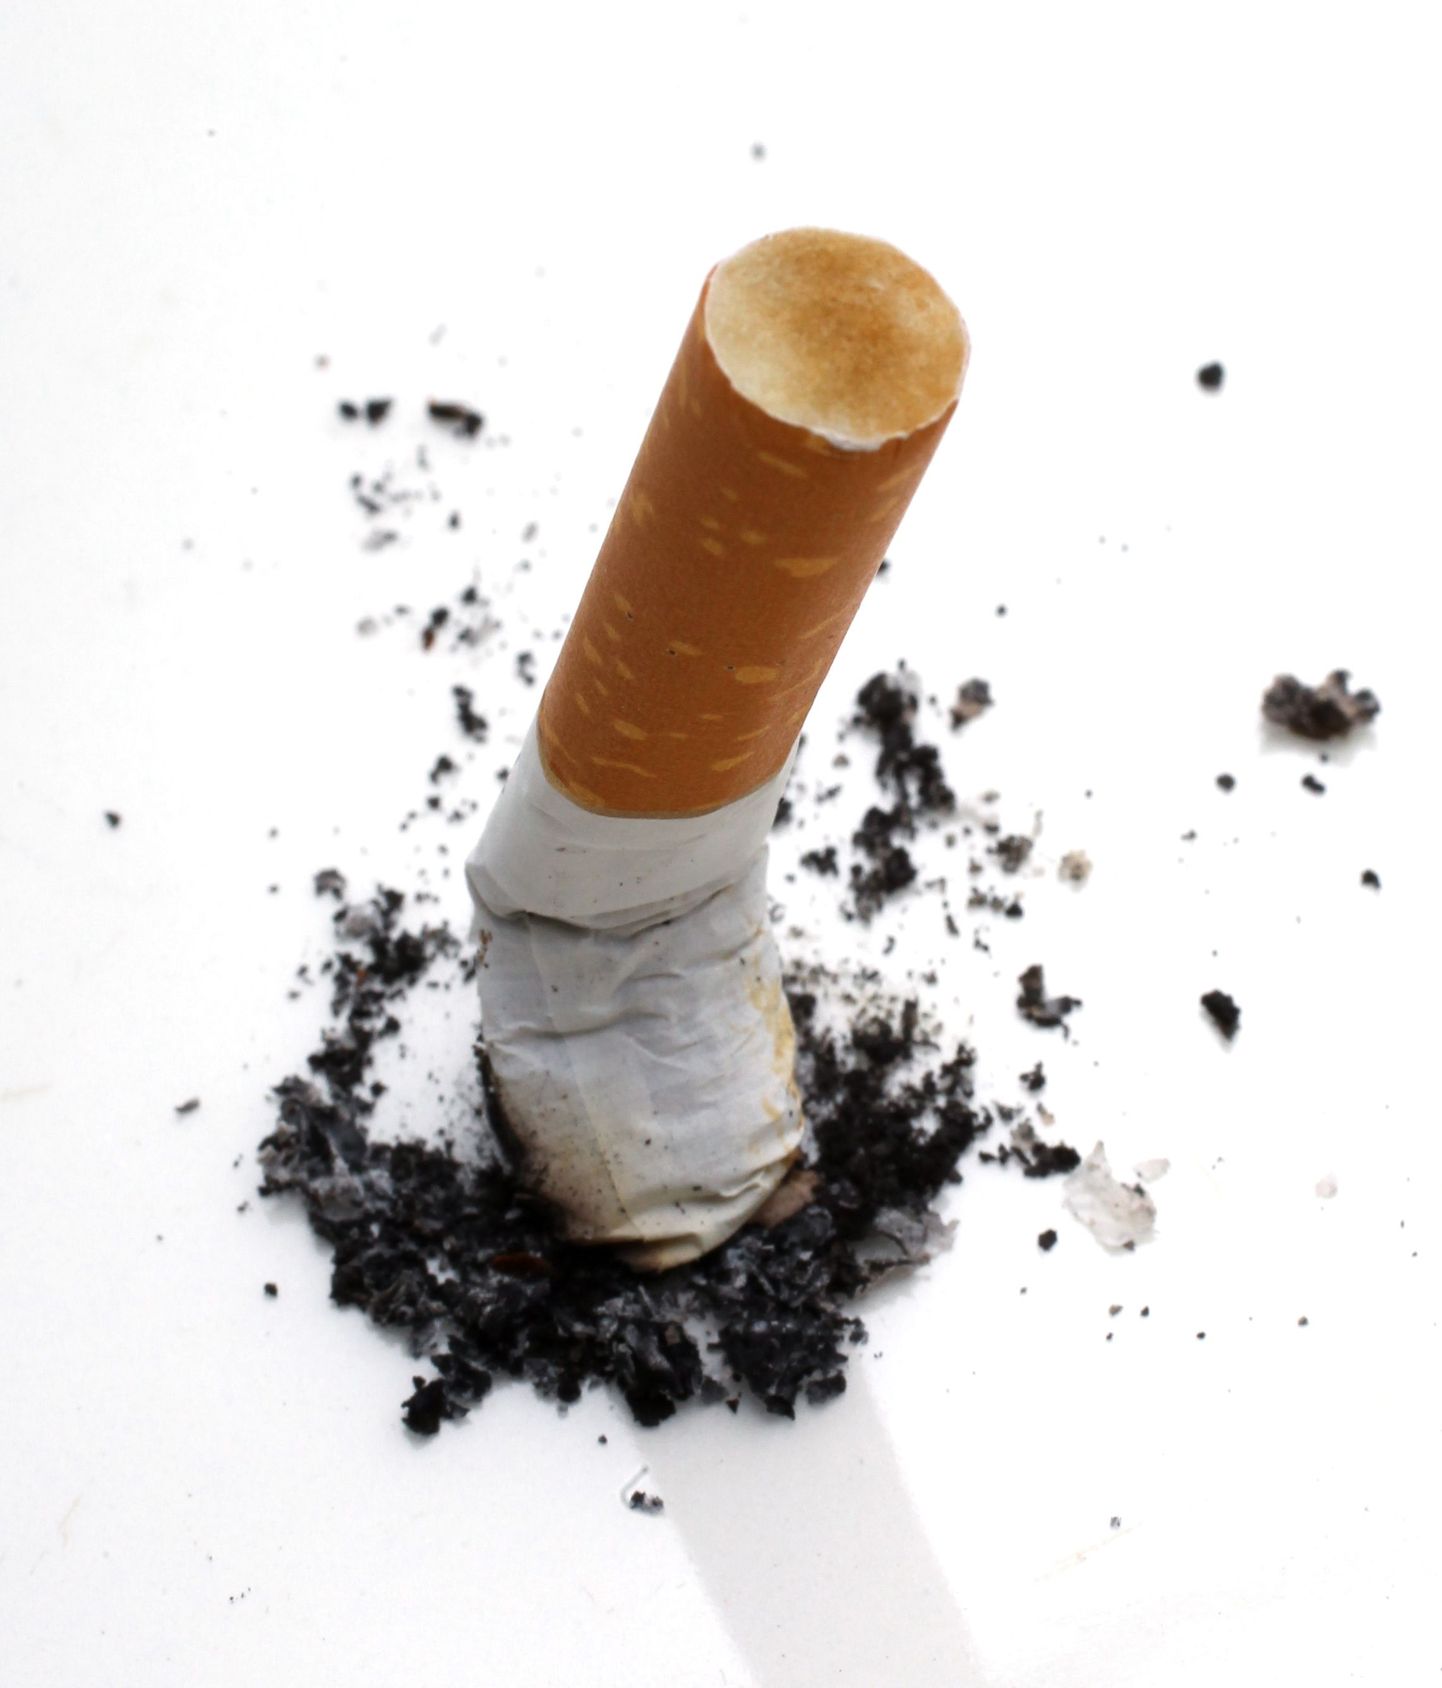 Назначать никотиновый пластырь, жевательную резинку, пастилки или лекарства бросающему курить должен врач